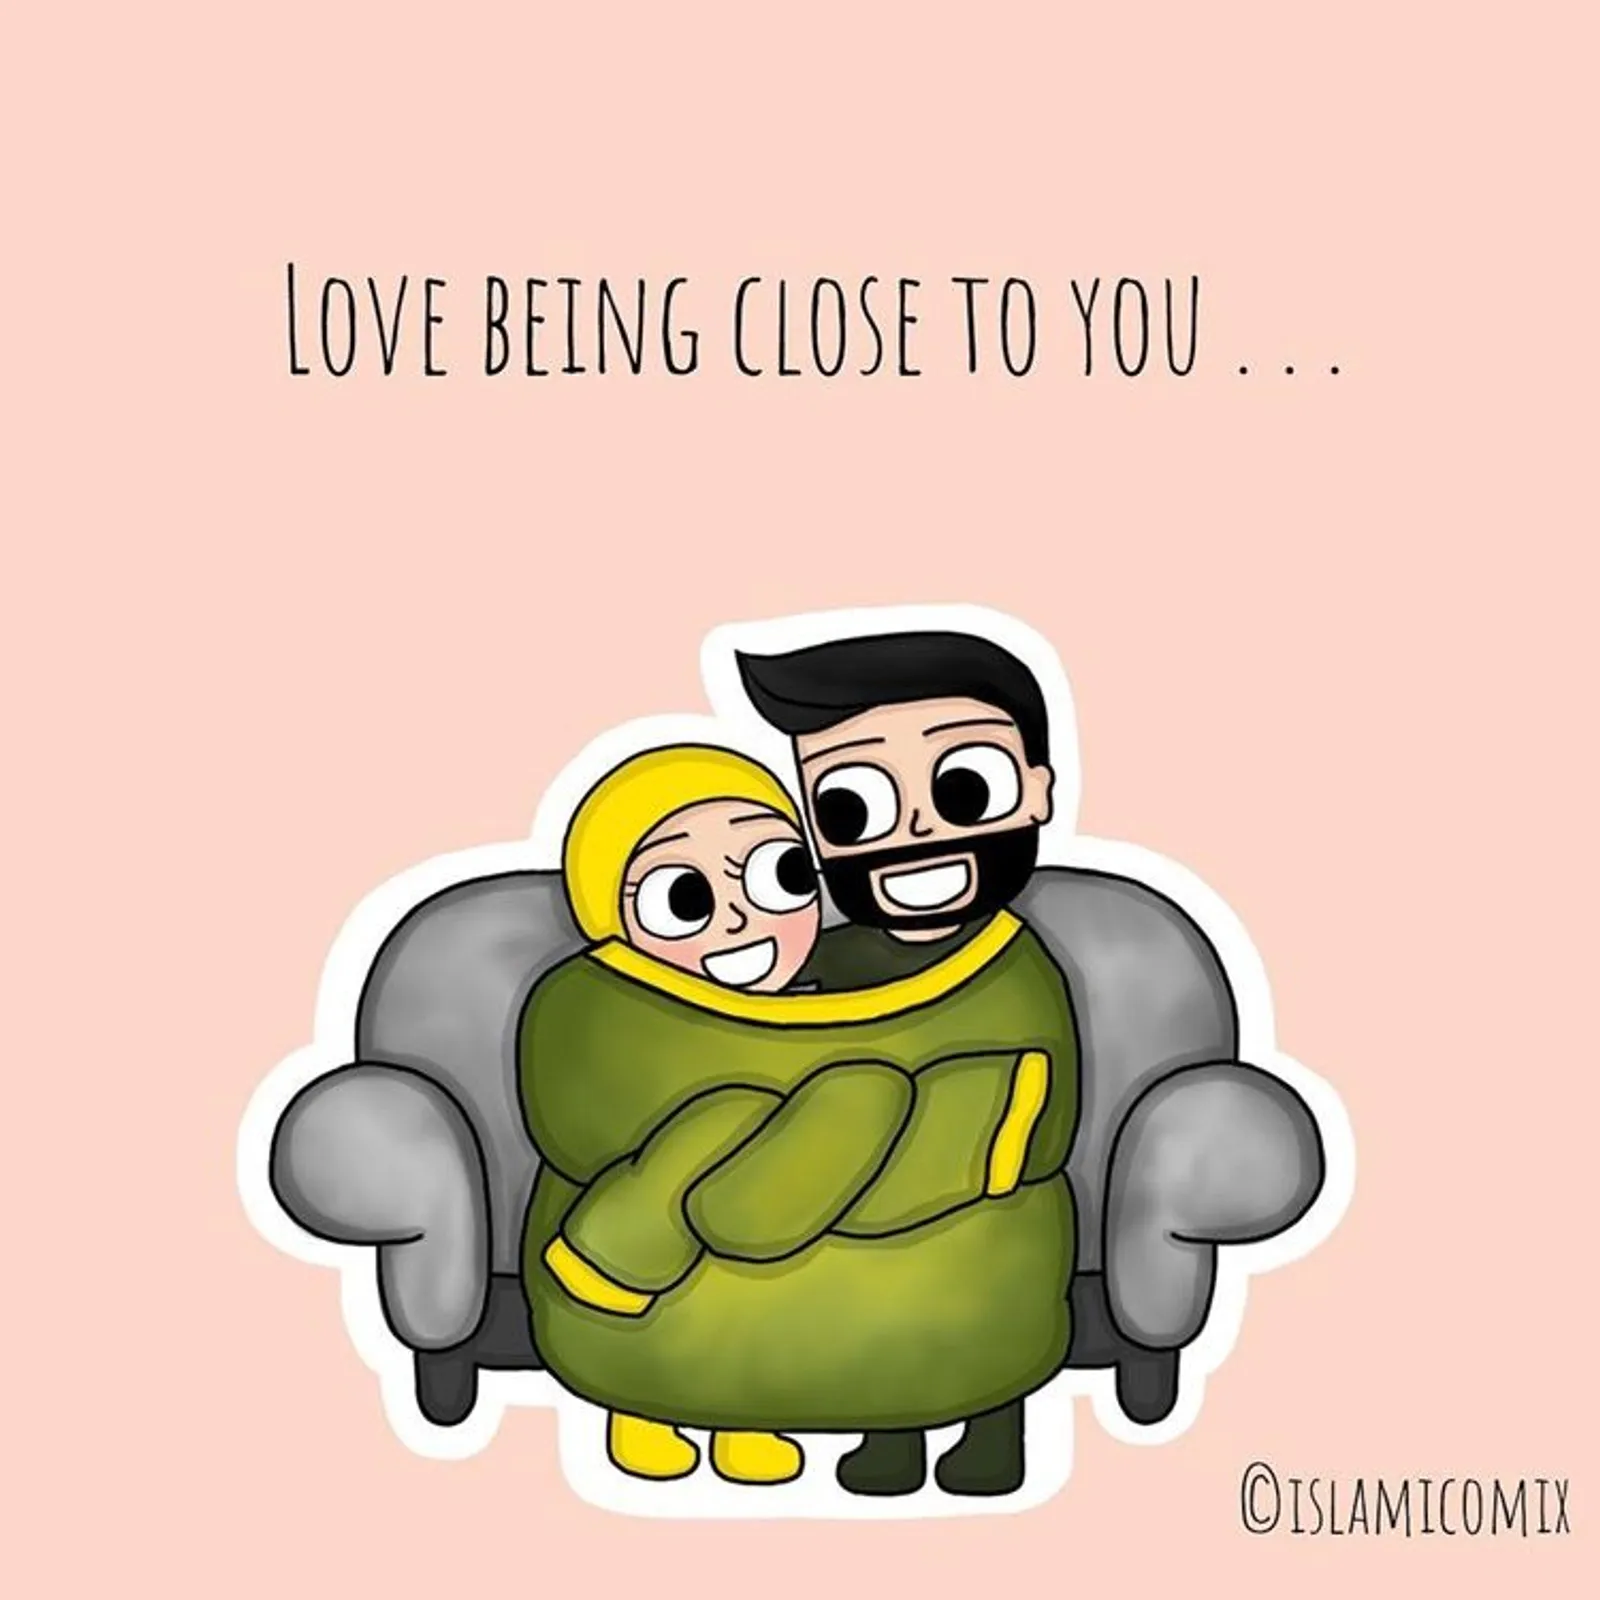 9 Ilustrasi Kehidupan Pasangan Muslim yang Romantis dan Menginspirasi